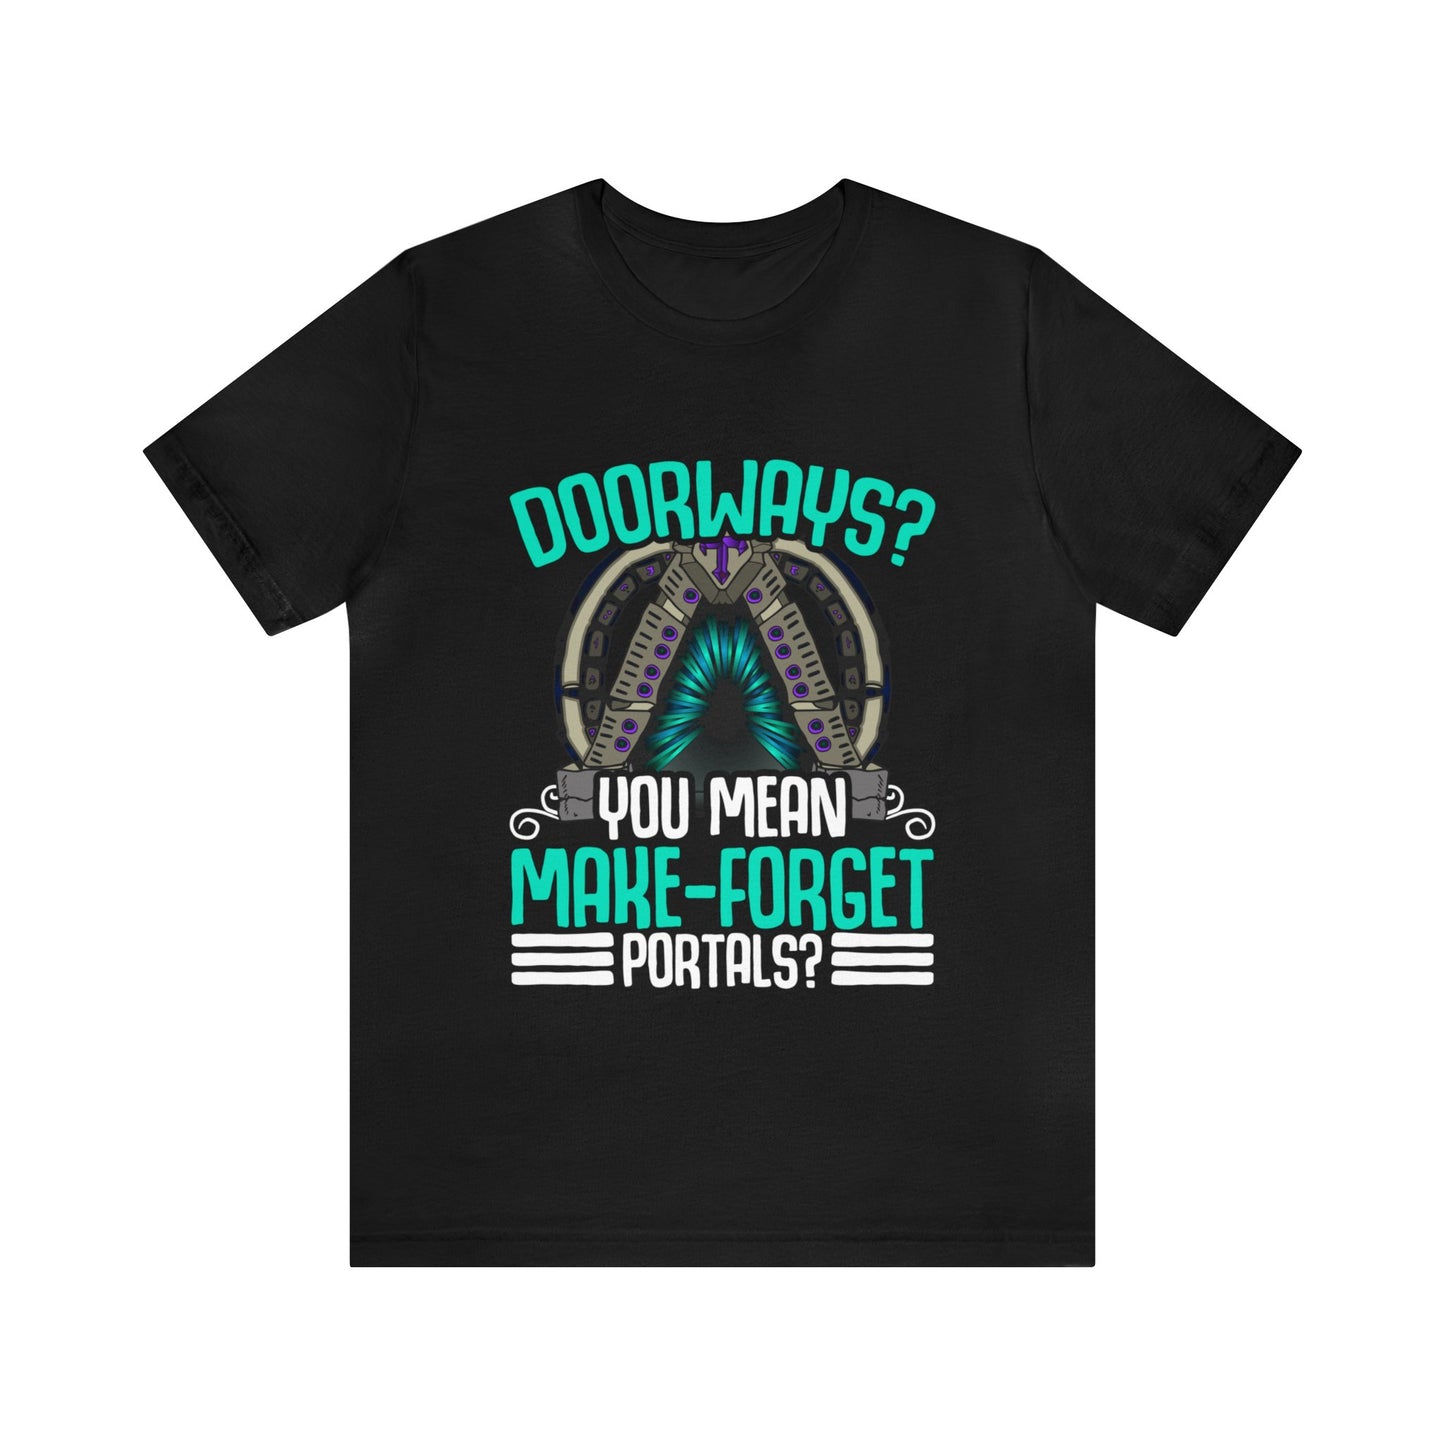 Doorways Are Just Make-Forget Portals Unisex T-Shirt